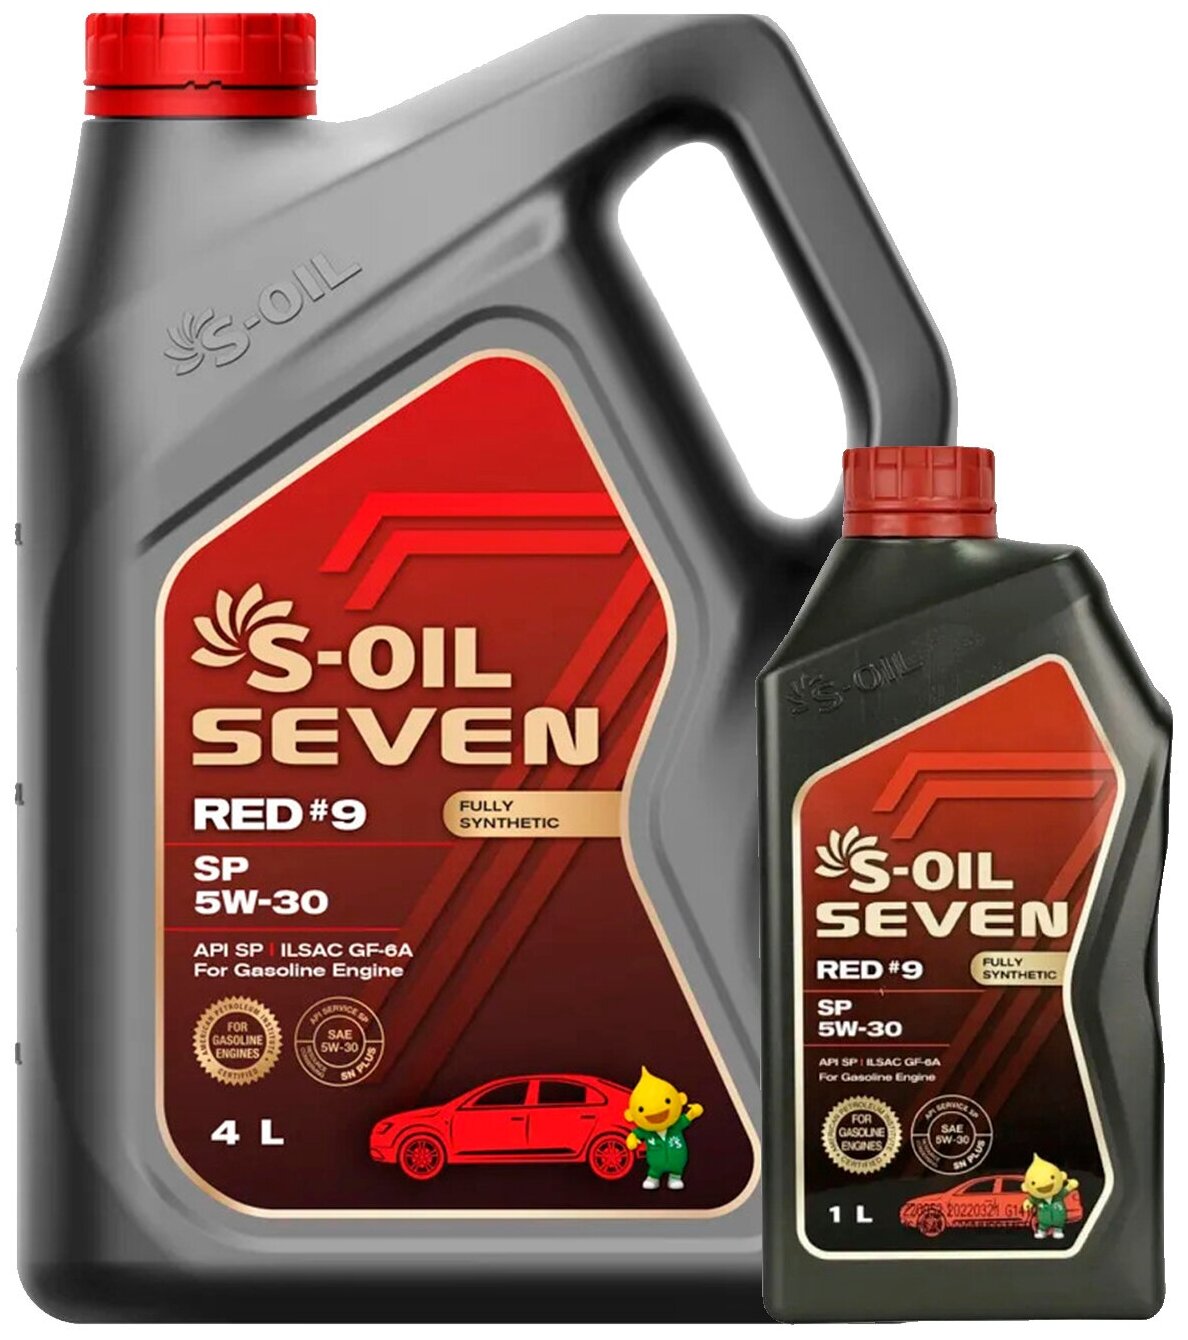  масло S-OIL SEVEN RED #9 SP 5W-30 4литра + 1литр —  в .